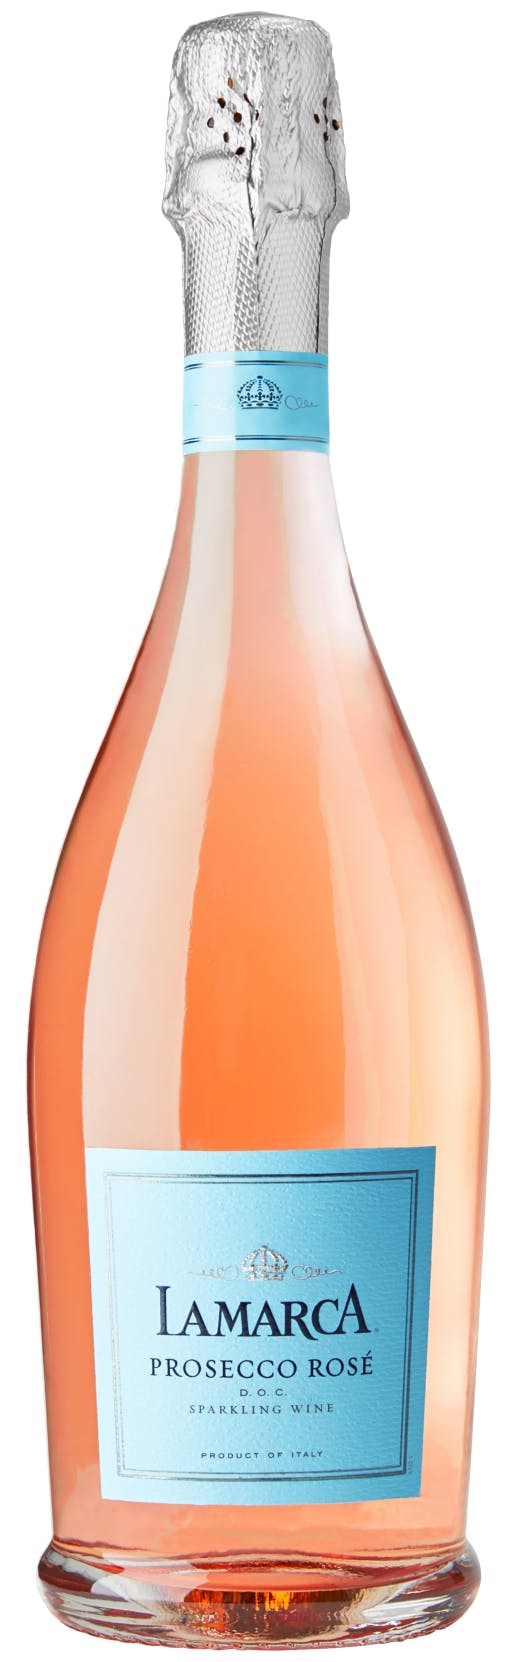 La Marca Prosecco Rose / 750 ml - Marketview Liquor